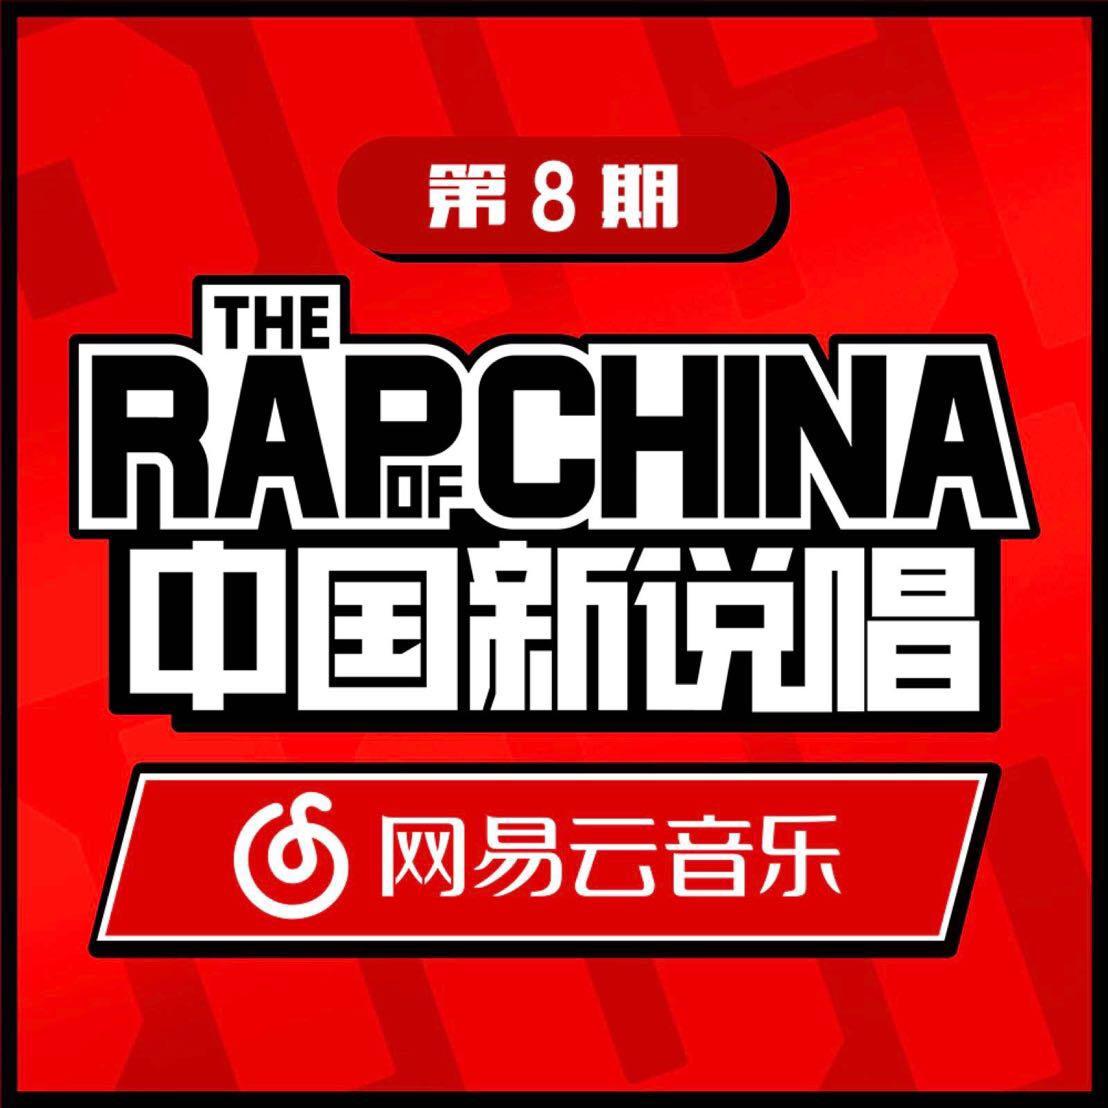 zhong guo xin shuo chang EP08 RAP01 Live